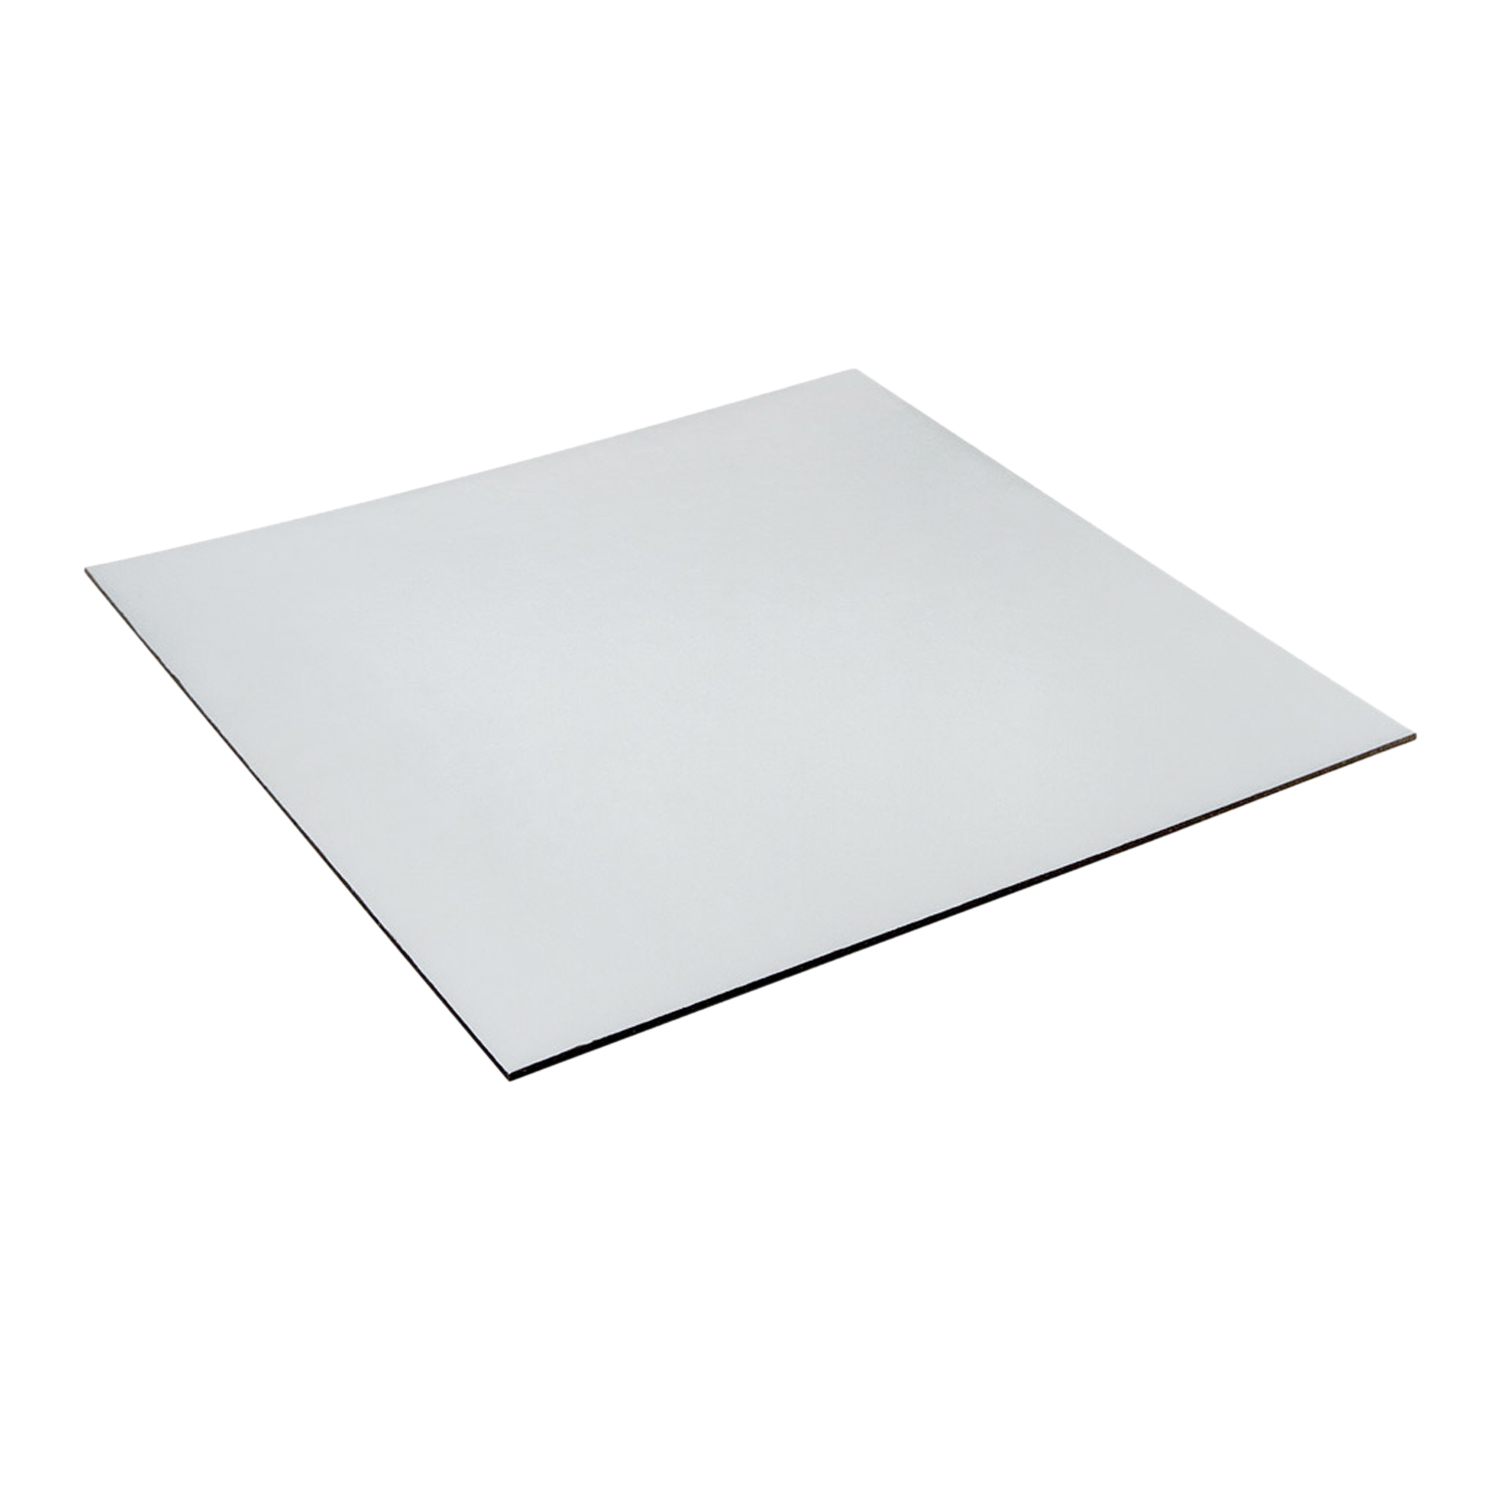 Cake Board (7 Inch), Silver Colour Square Shape